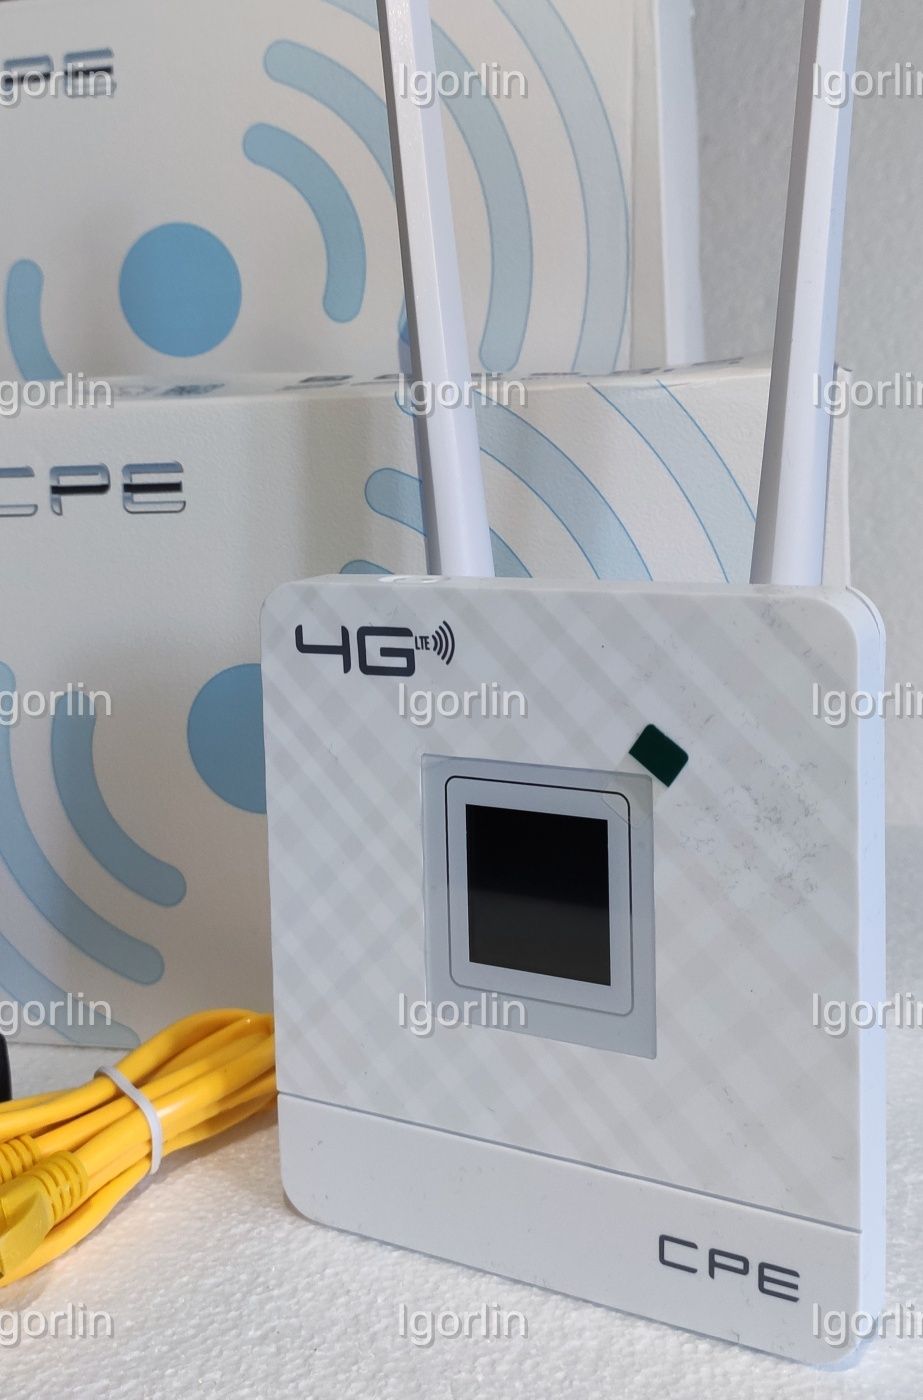 4G LTE Wi-Fi-роутер с поддержкой Sim карт и внешними антеннами